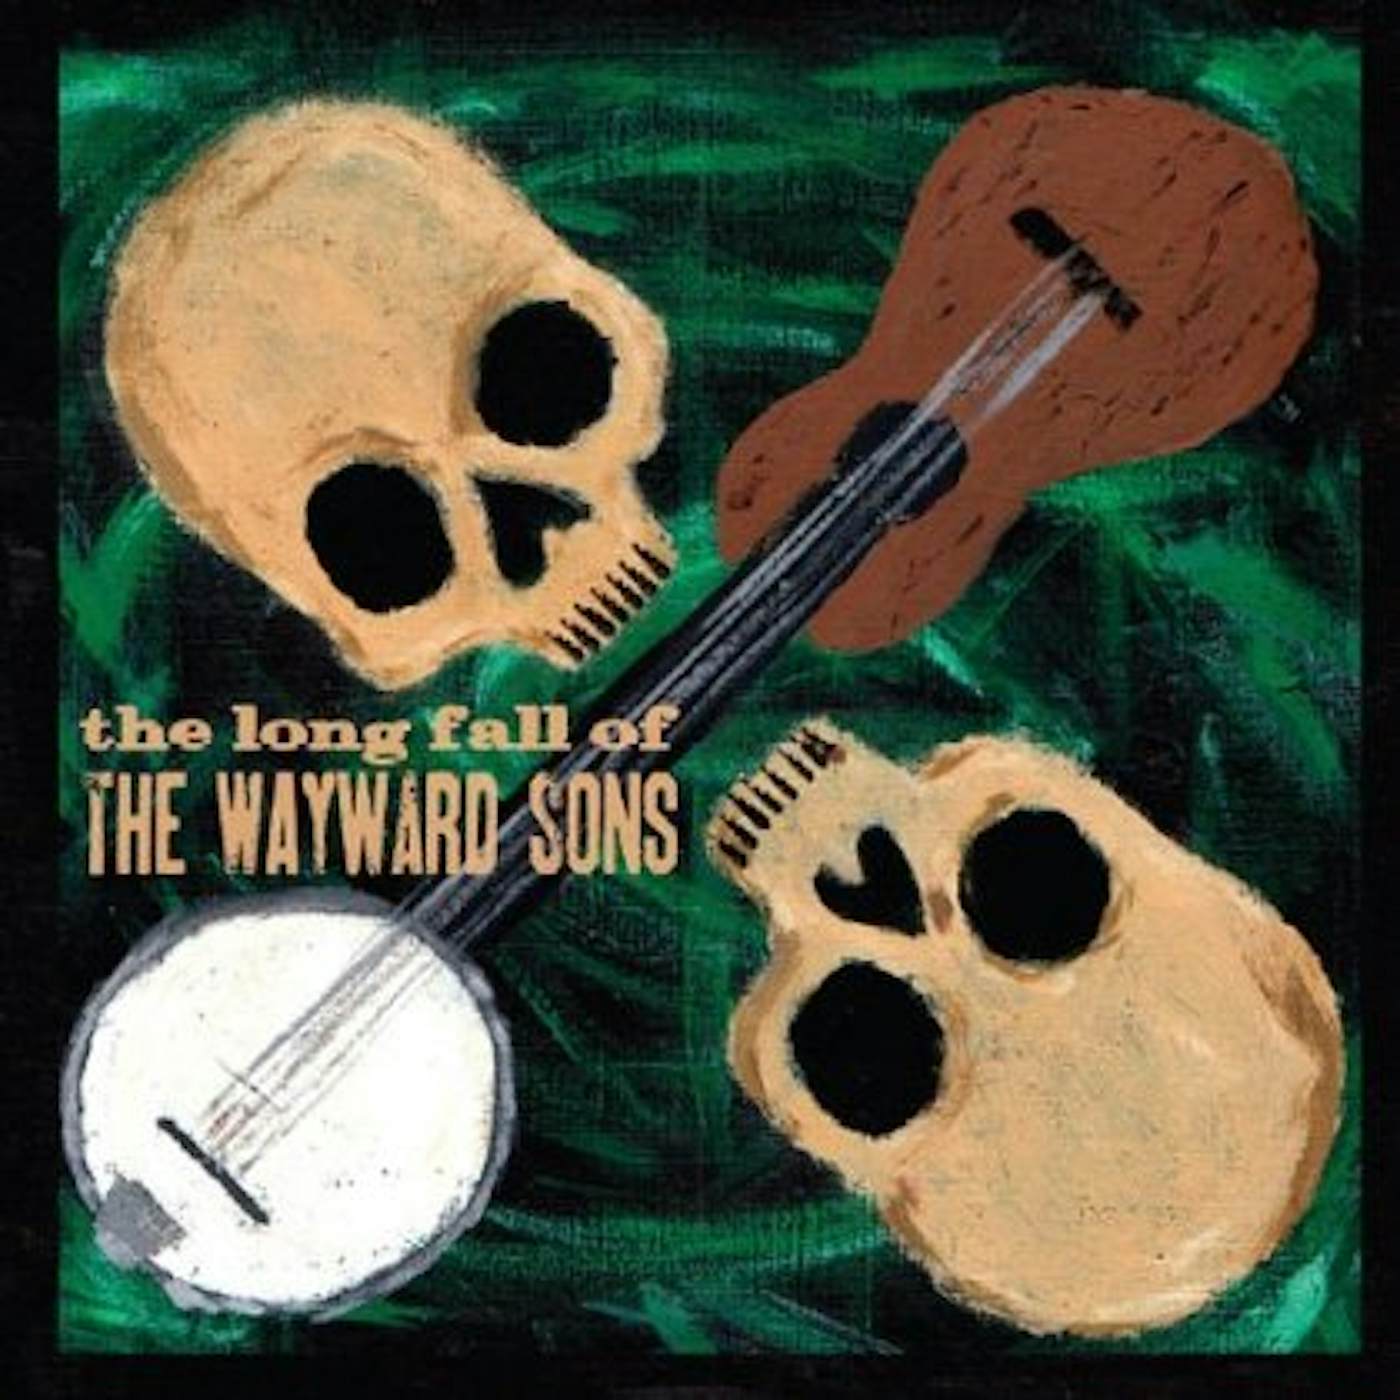 Wayward Sons THE LONG FALL OF CD